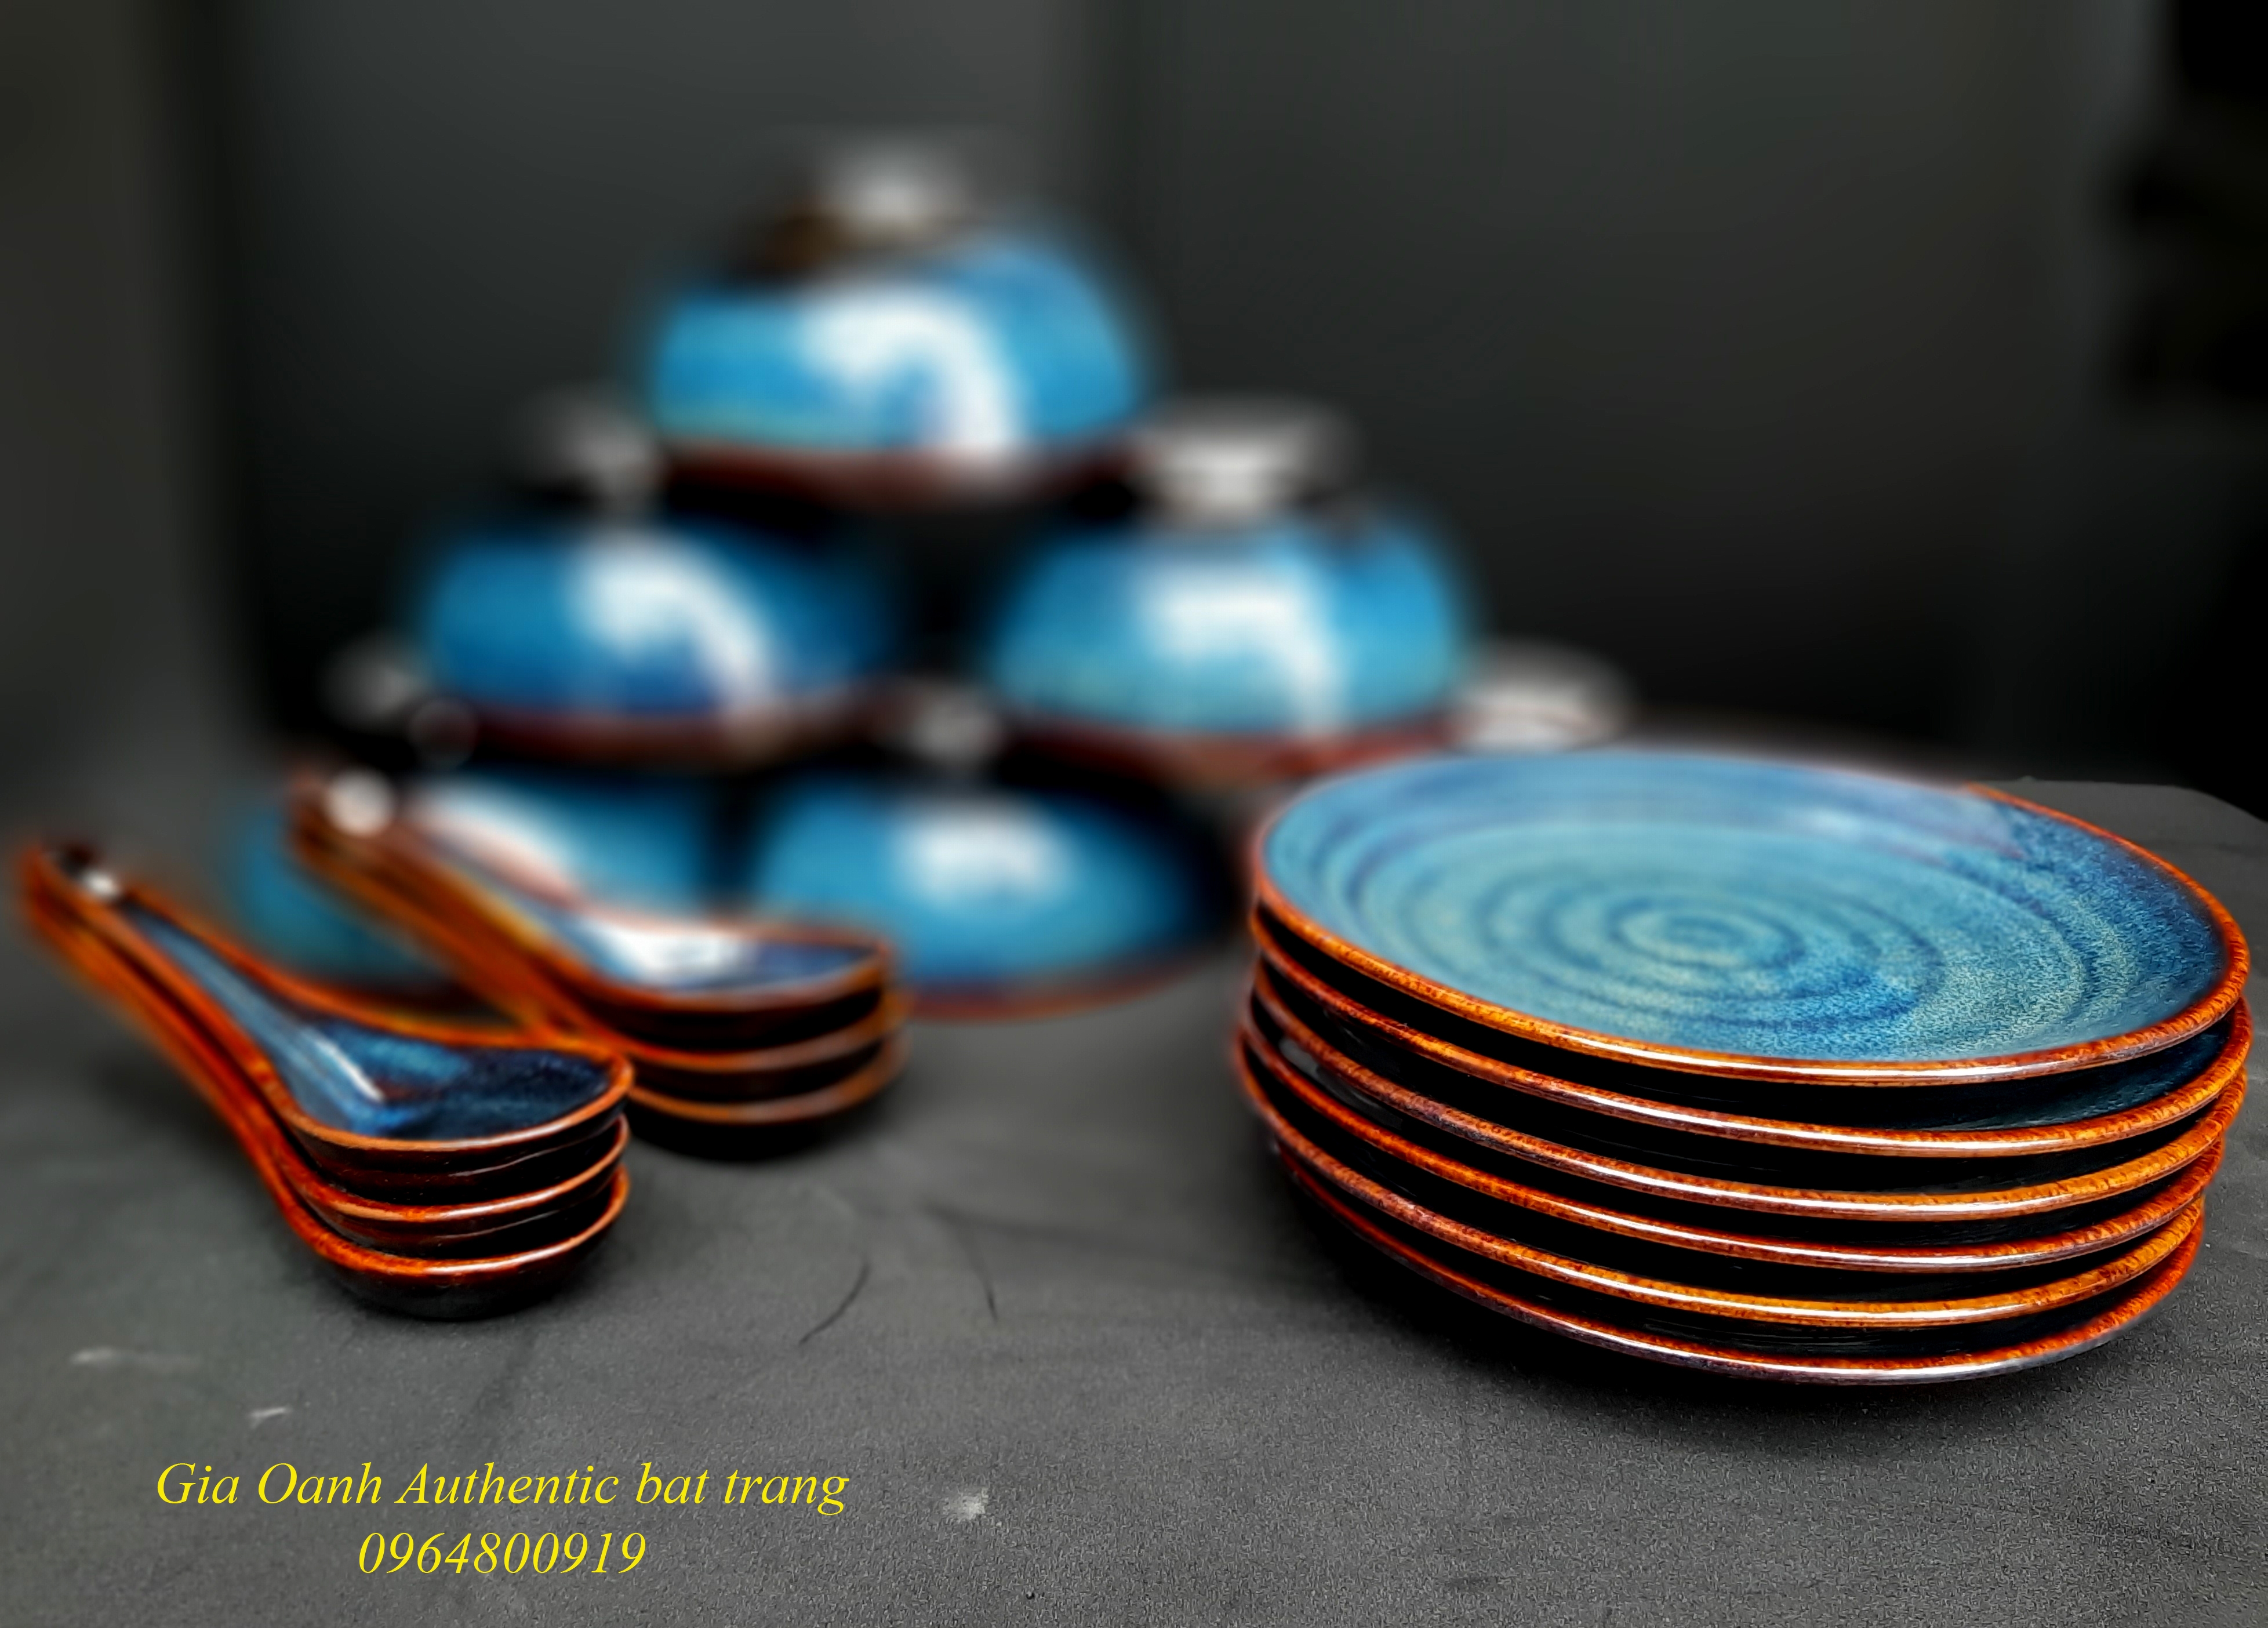 Blue dinner set 1 / Bộ đồ ăn men xanh hỏa biến ( bát, đĩa và thìa) xưởng Gia Oanh Authentic bat trang